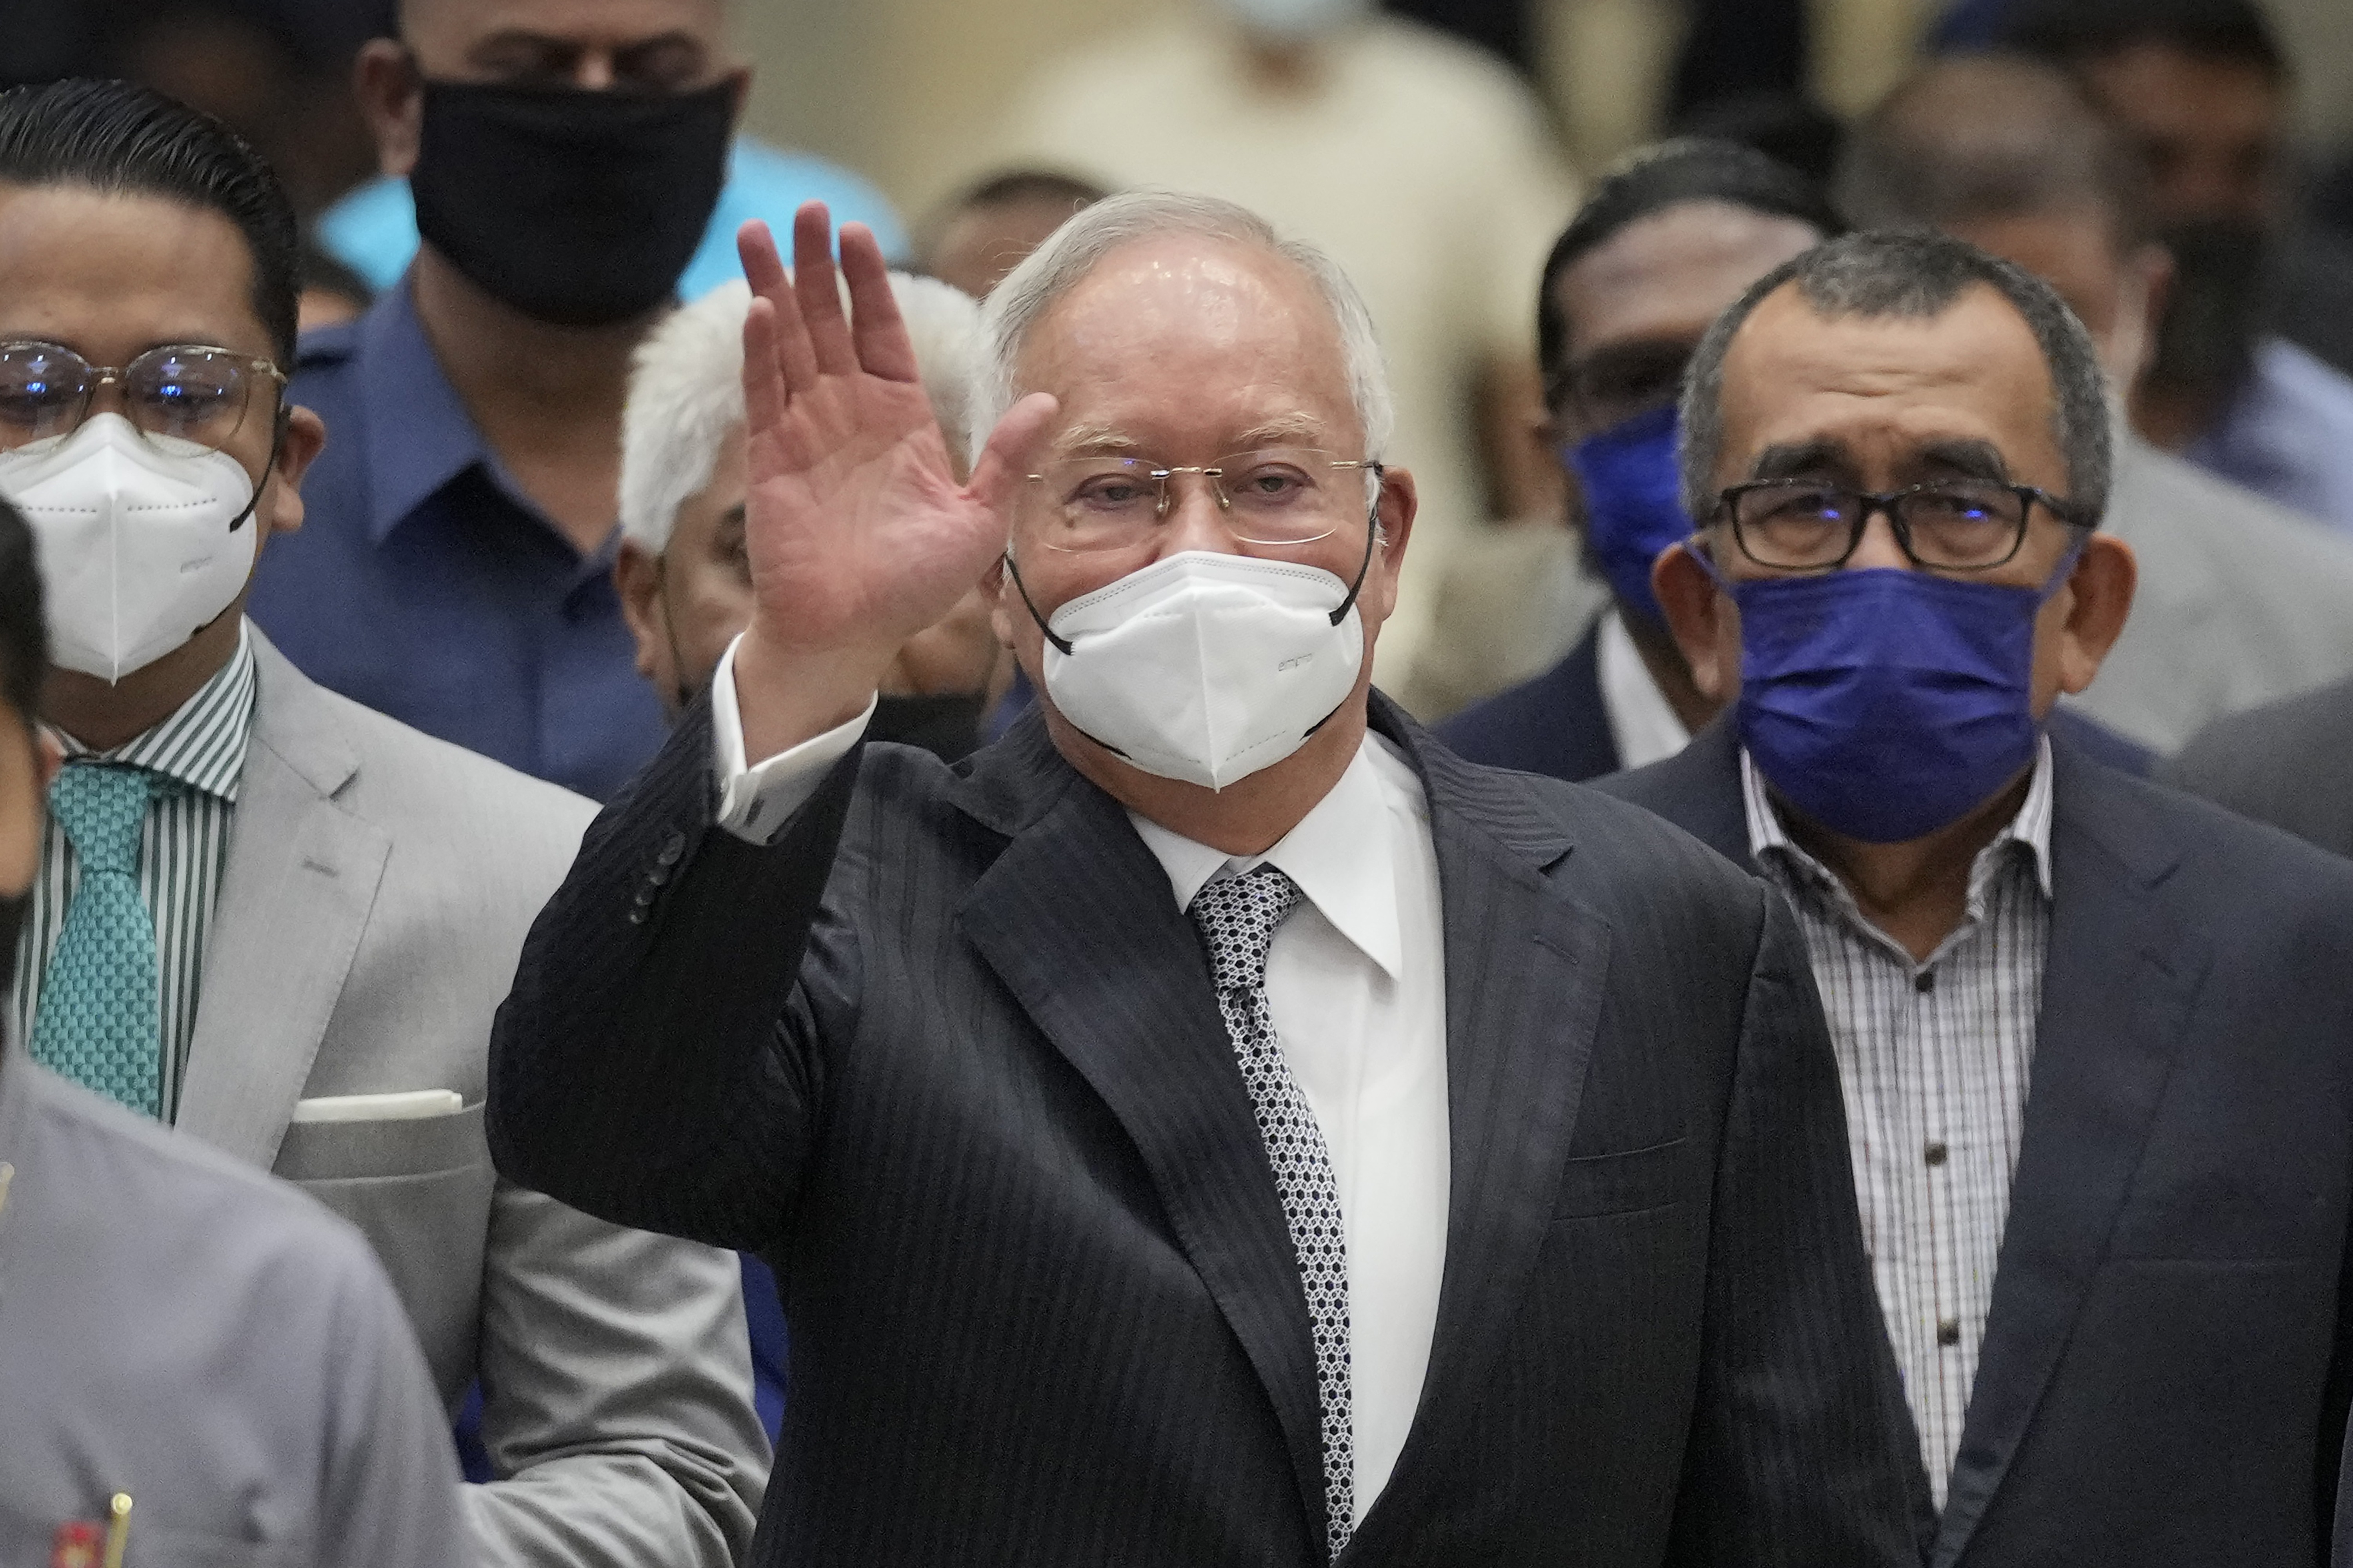 入獄13天 馬來西亞前總理納吉被送醫治療 – 聯合新聞網